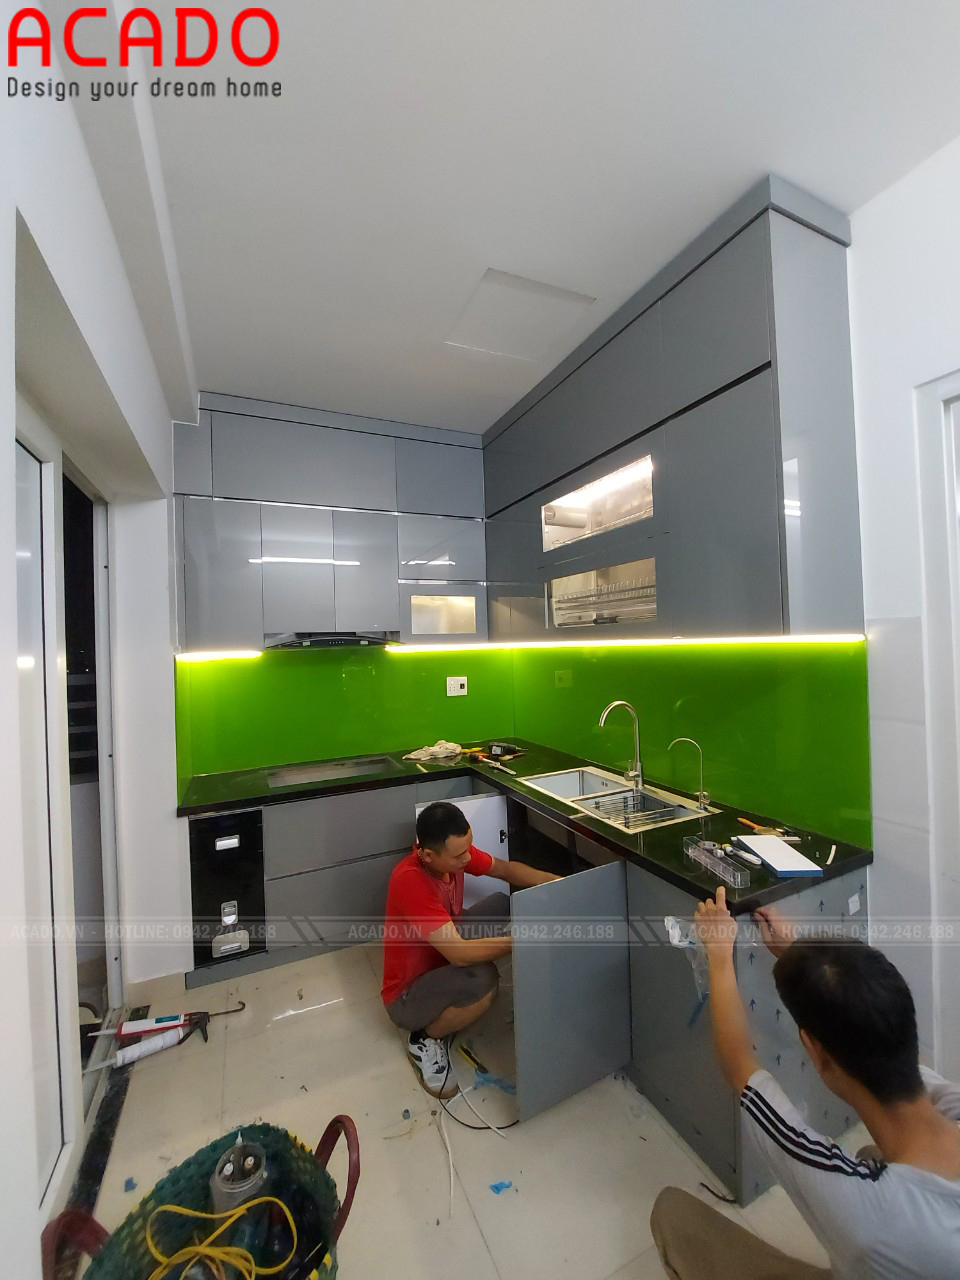 Hình ảnh quá trình lắp đặt tủ bếp cho gia đình anh Yên